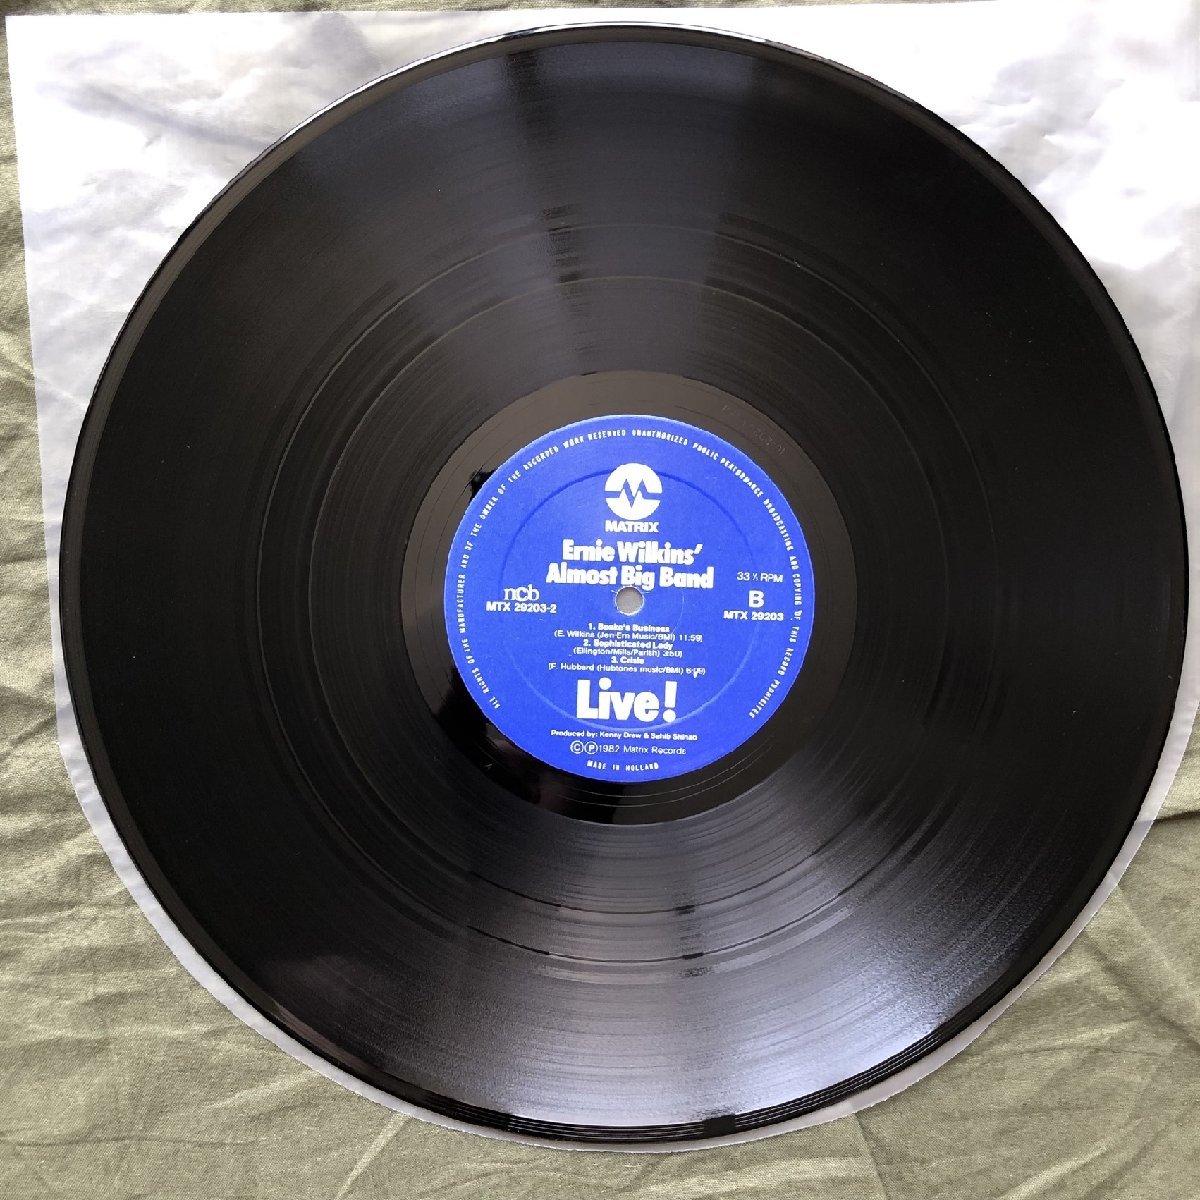 原信夫Collection 傷なし美盤 1982年 オランダ盤 オリジナルリリース盤 LPレコード Ernie Wilkins' Almost Big Band Live! Copenhagen_画像9